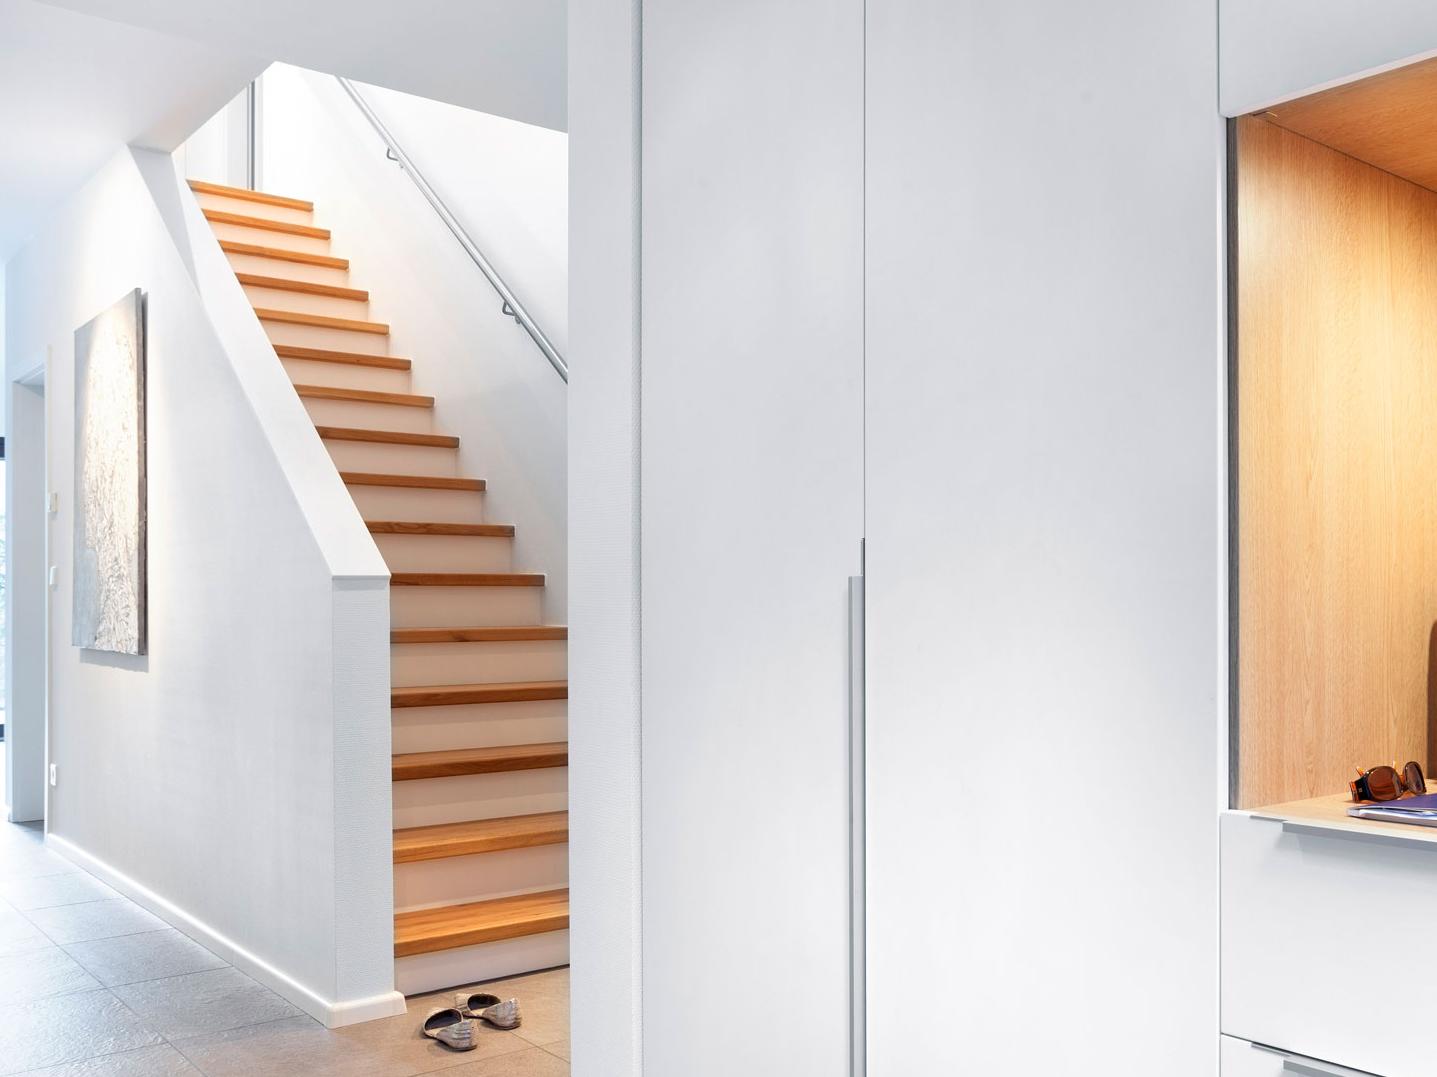 Stair Forms - Escalier droit avec une main courante simple